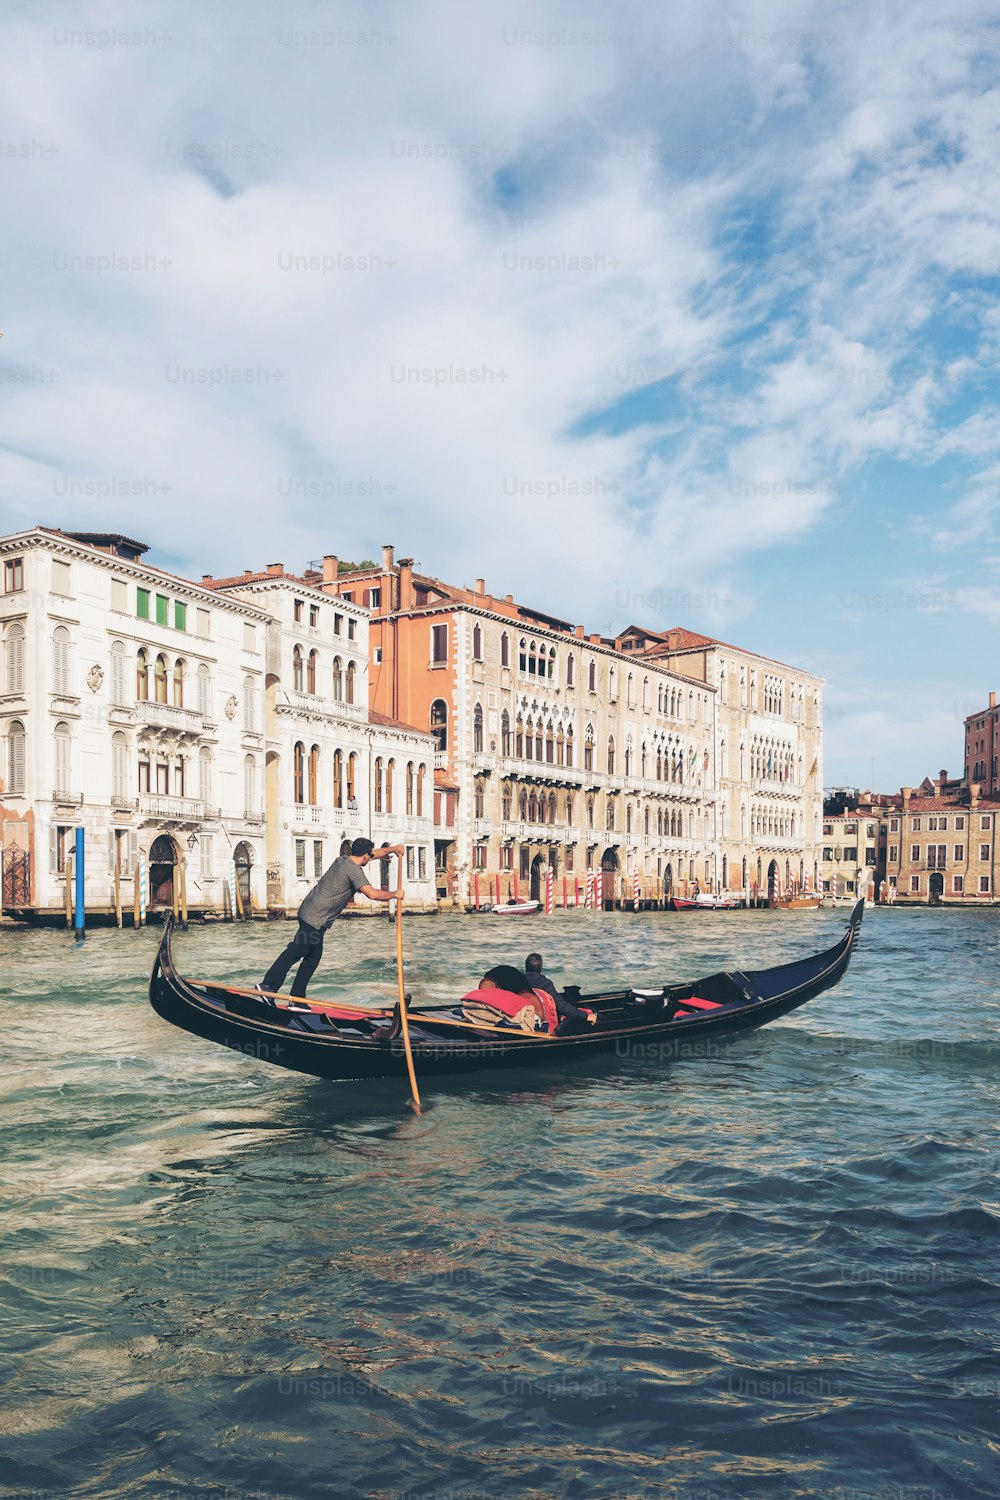 베네치아 곤돌리에가 이탈리아 베니스의 대운하를 통과하는 곤돌라를 펀팅하고 있다. 곤돌라는 바닥이 평평한 전통적인 베네치아 노 젓는 보트입니다. 이탈리아 베니스의 독특한 교통 수단입니다.